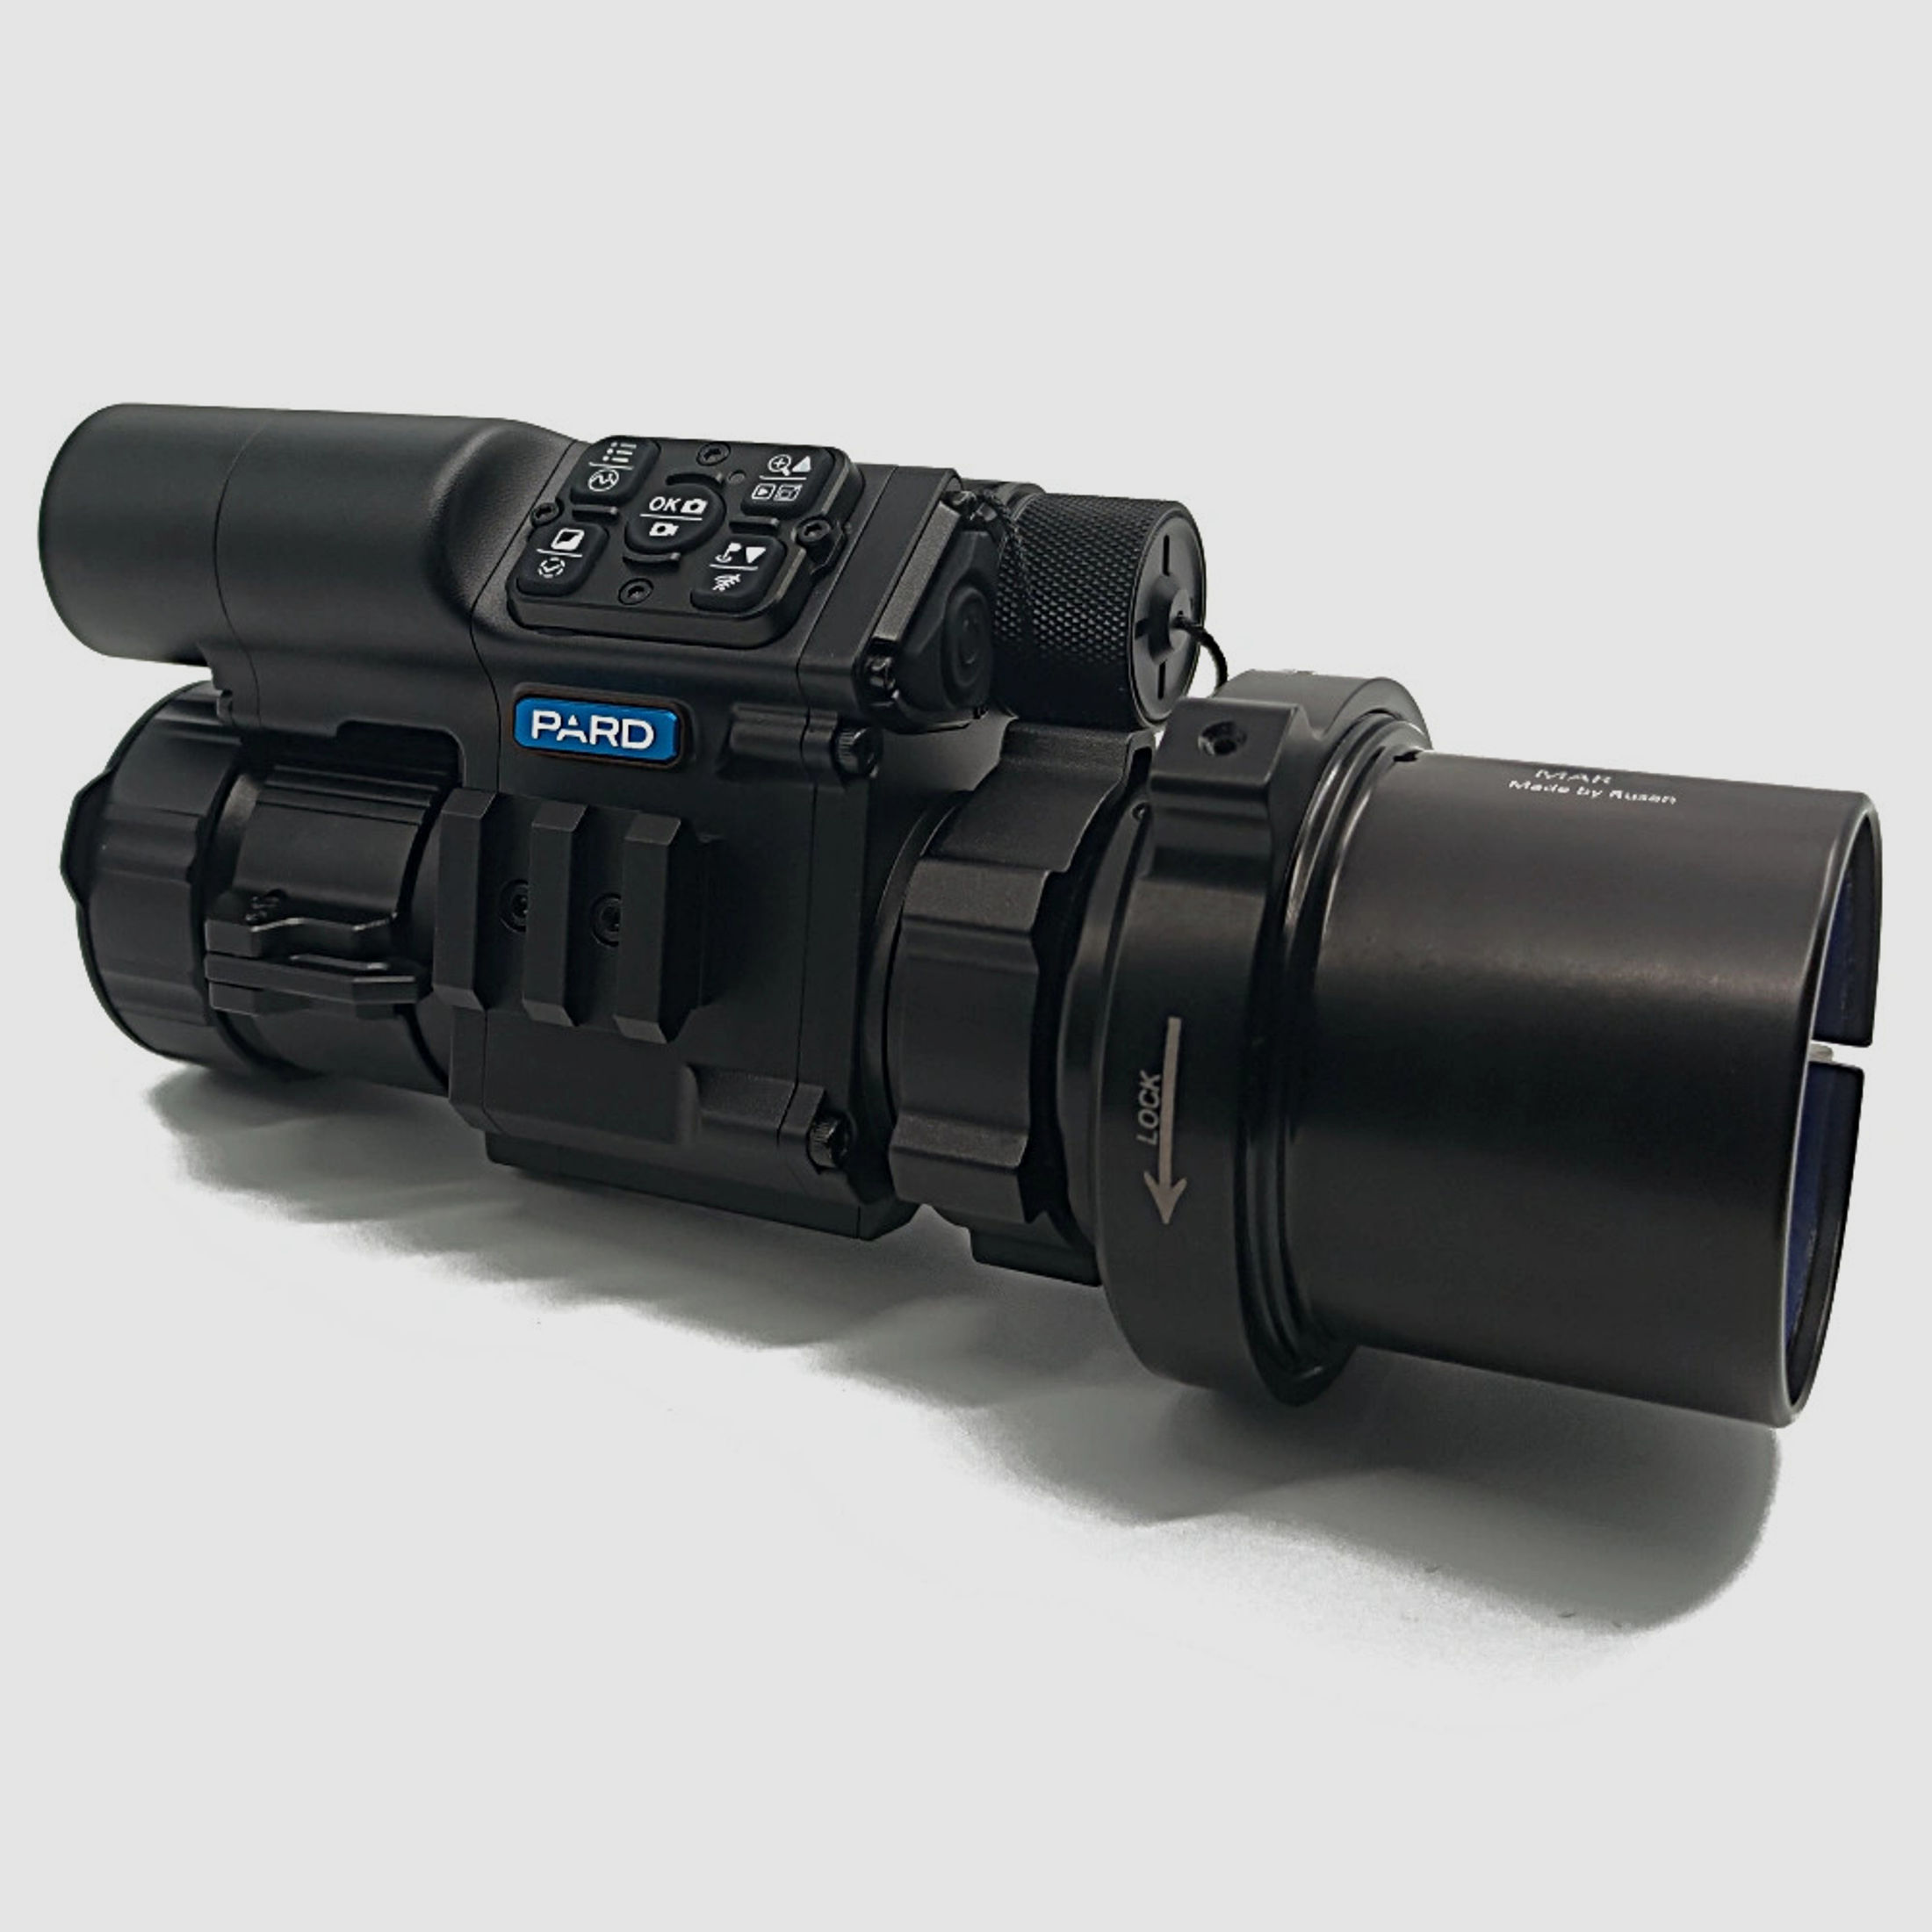 PARD FD1 Nachtsicht 3 in 1 Vorsatz, Monokular & Zielfernrohr - 940 nm mit LRF 65 mm RUSAN MAR + RUSAN MCR